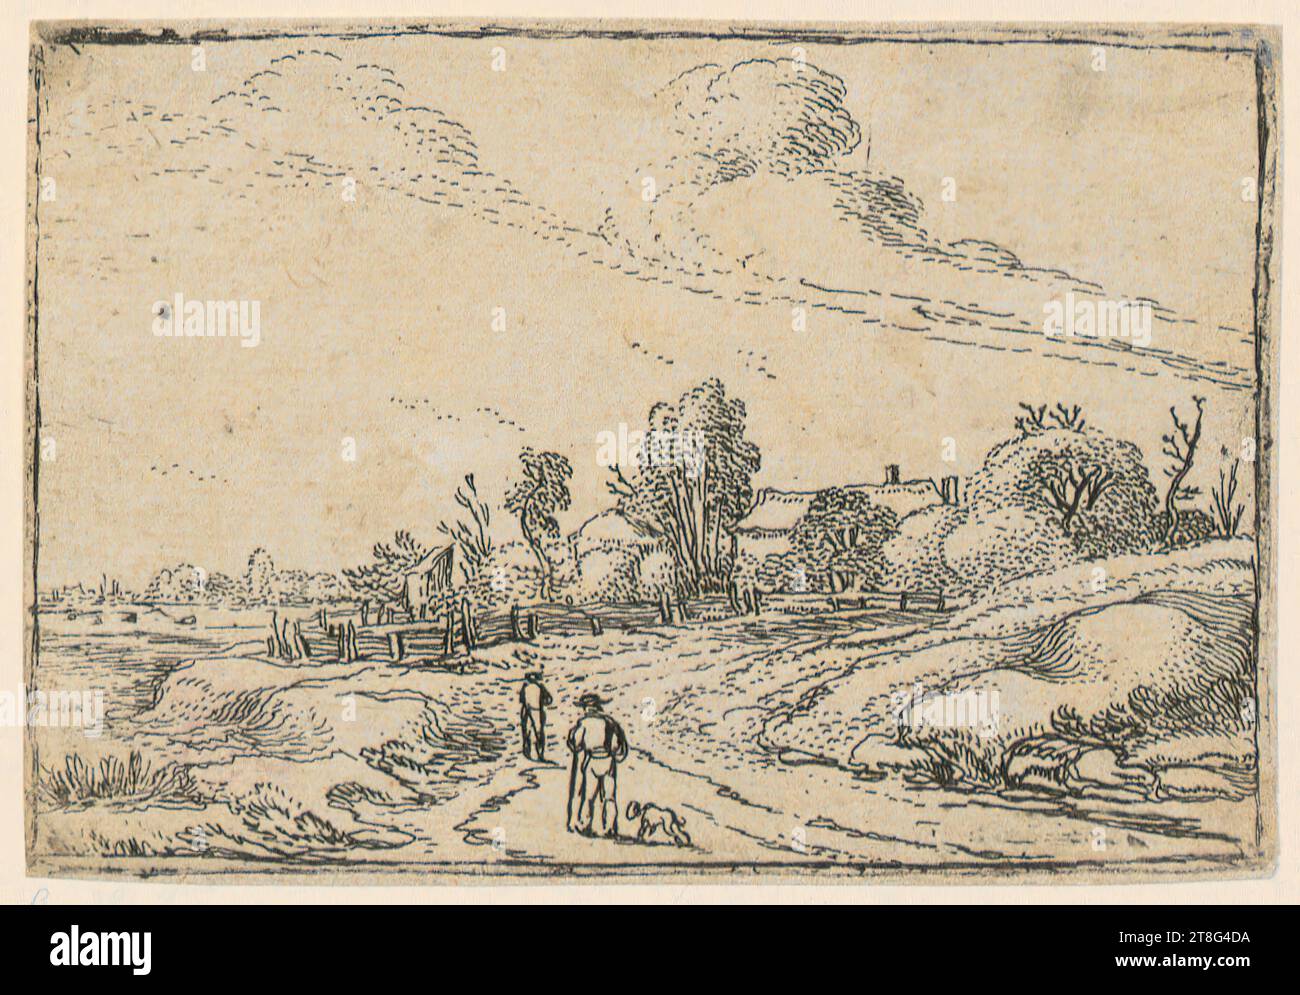 Esaias van de Velde (1587 - 1630), deux hommes avec un chien sur un chemin menant à une ferme, feuille 7 de la série 'petits paysages', support d'impression : 1600 - 1633 premier D, gravure, taille de la feuille : 7,0 x 10,2 cm, verso en bas à droite noir Banque D'Images